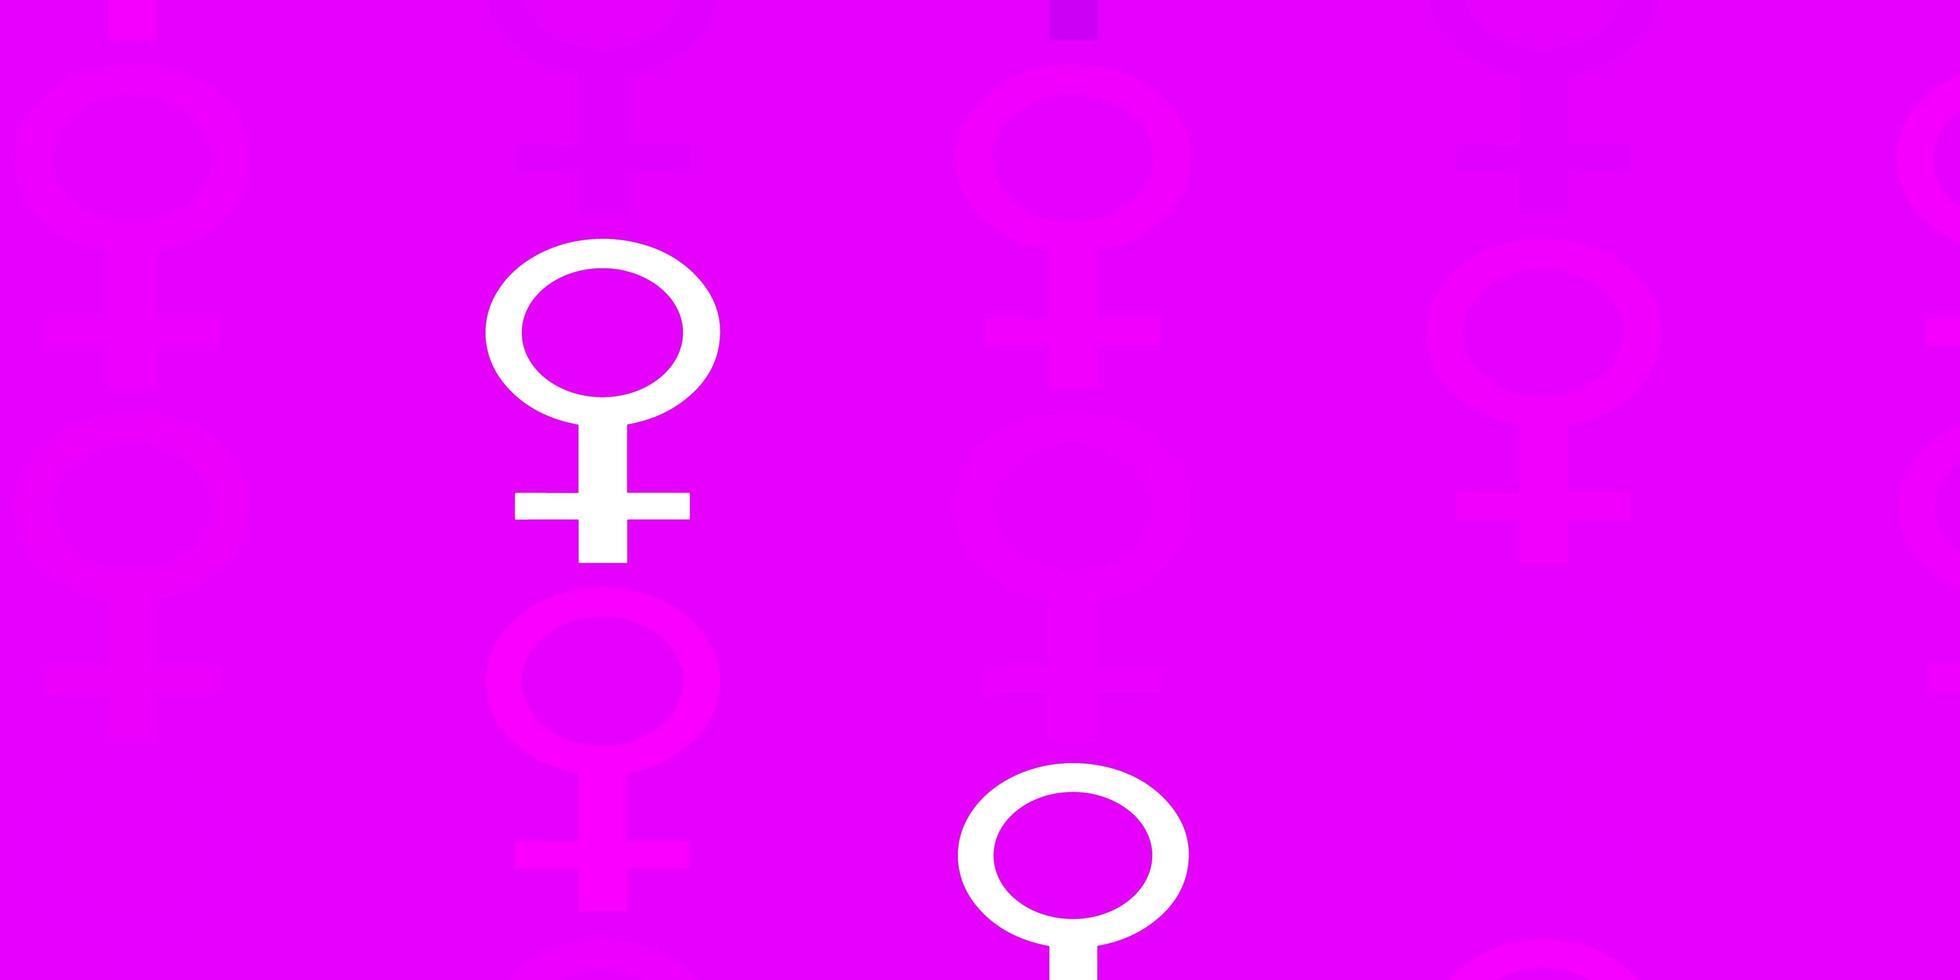 patrón de vector rosa claro con elementos de feminismo